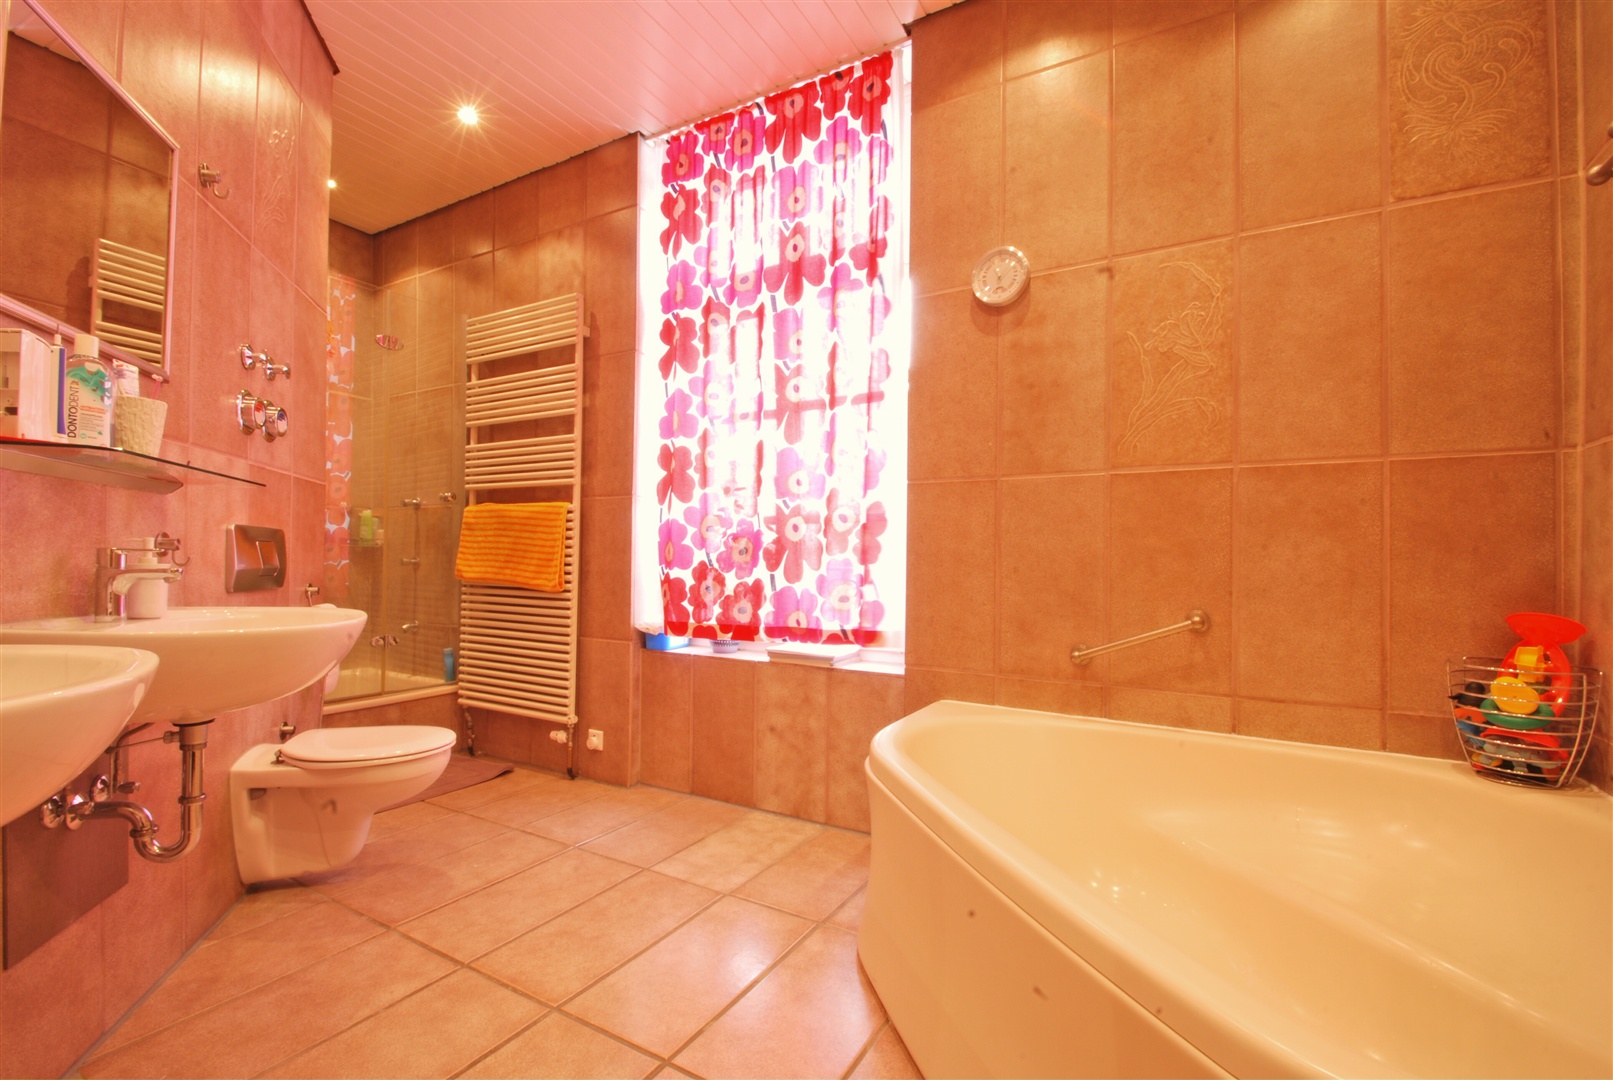 sehr großes tageslichtbad mit badewanne für zwei, duschkabine, toilette und zwei waschtische. der fussboden ist beheizt - Oliver Reifferscheid - Immobilienmakler Darmstadt